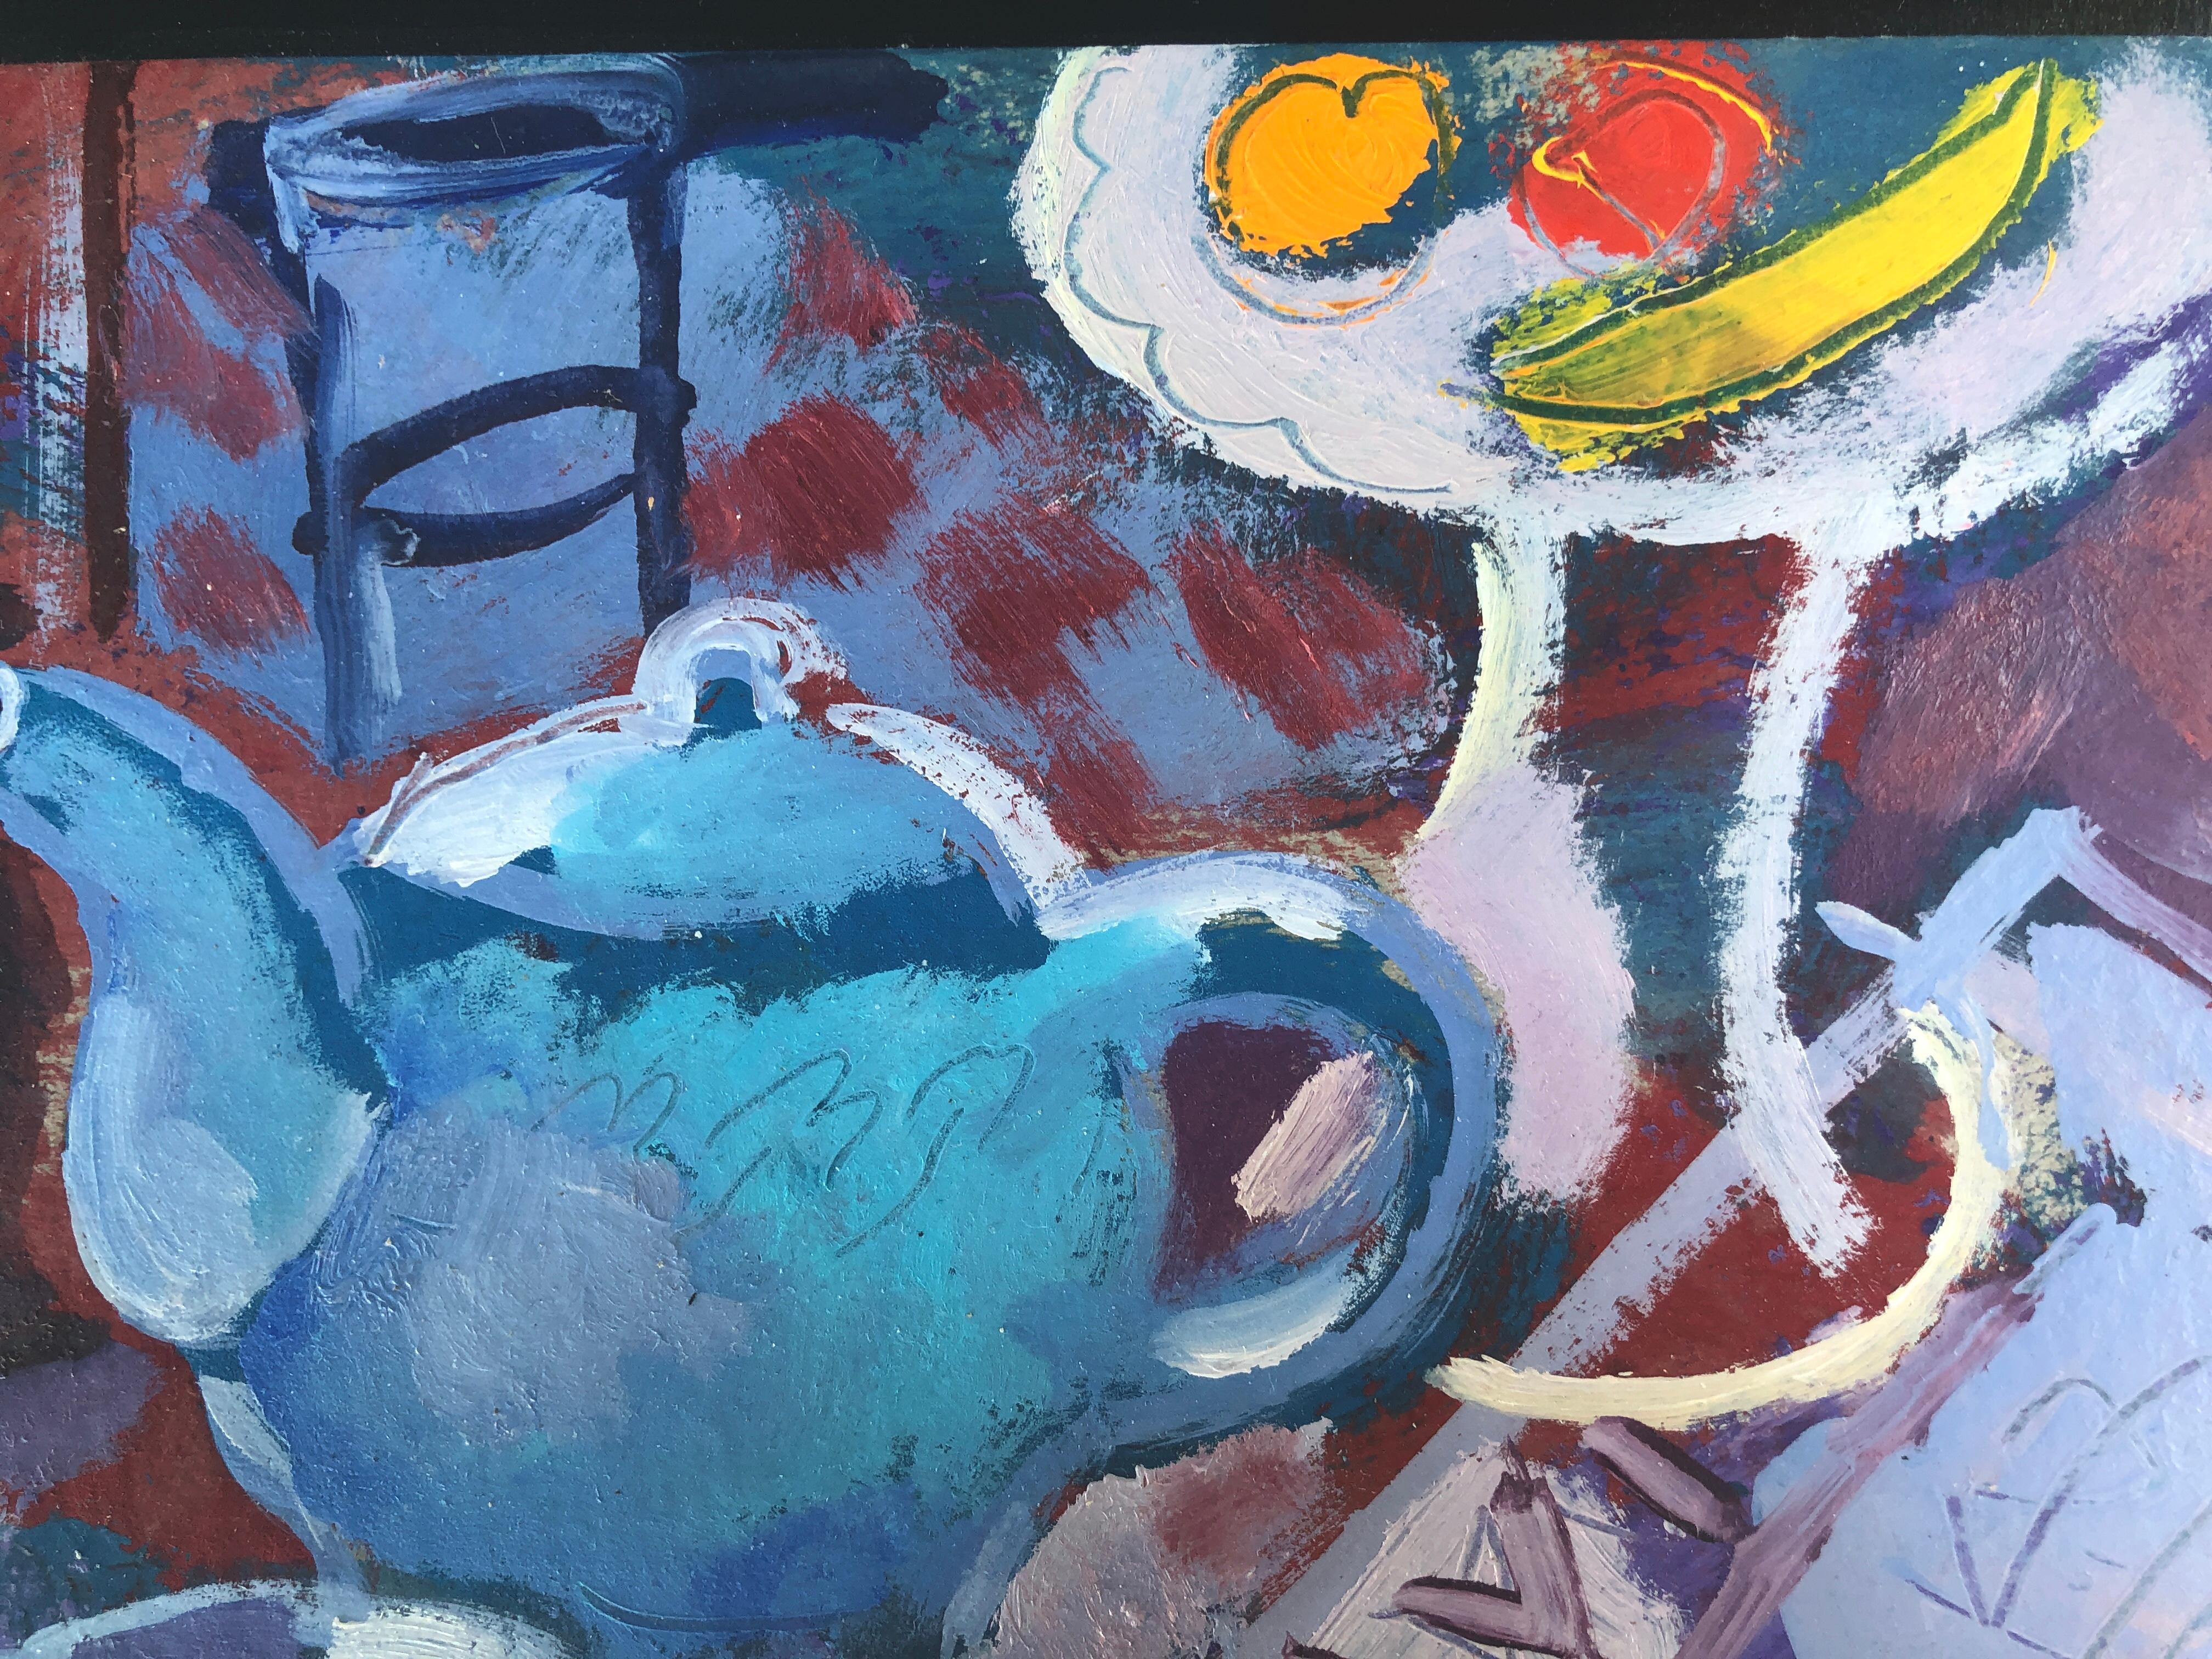 Ramón Moscardó (1953) - Stilleben mit Teekanne und Pfeife - Öl auf Karton

Öl auf Karton.

Das Öl misst 17,5x24,5 cm.

Der Rahmen misst 25x32 cm.

neuen Rahmen.

Ramón Moscardó studierte an der Schule der Schönen Künste Sant Jordi und an der Schule